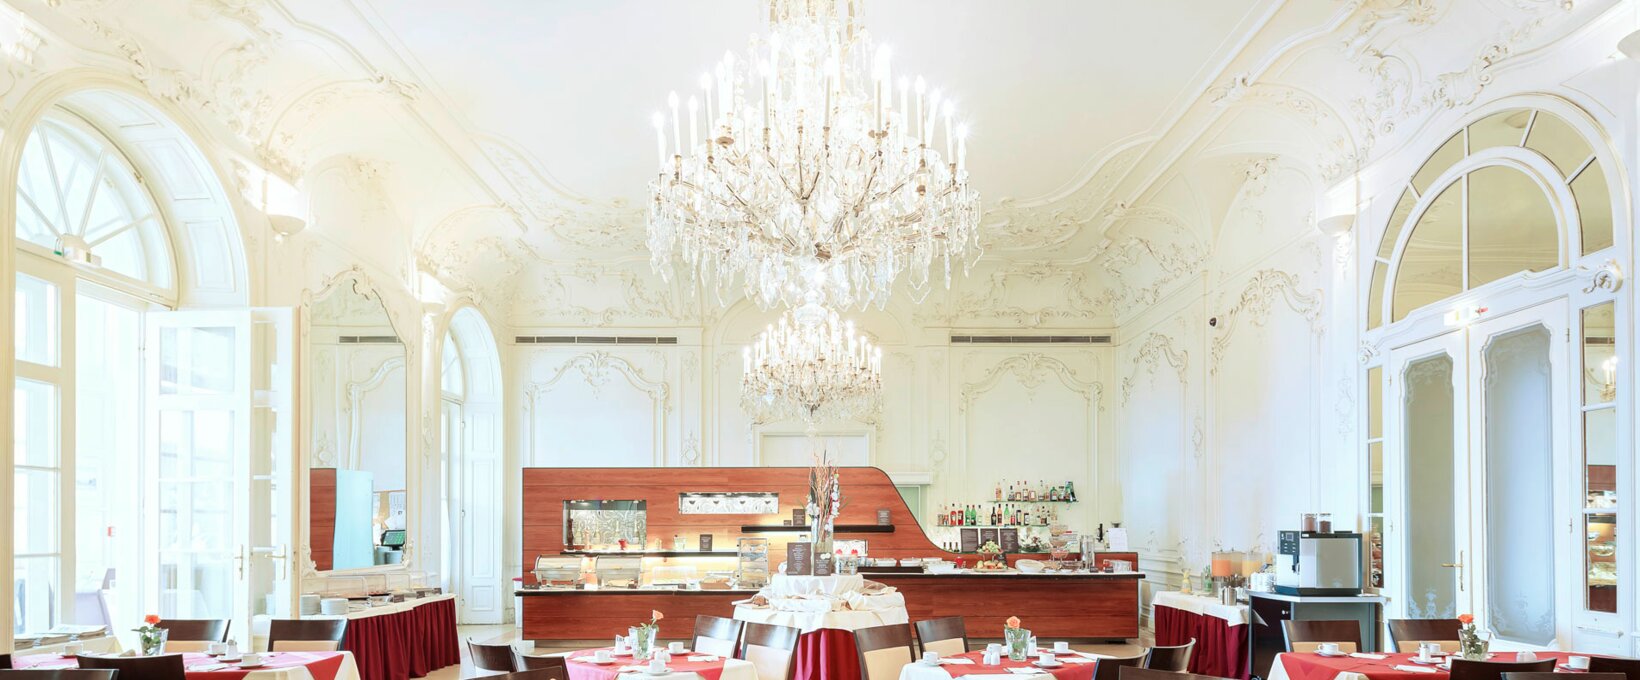 Frühstücksrestaurant mit Buffet | Hotel Schloss Wilhelminenberg in Wien